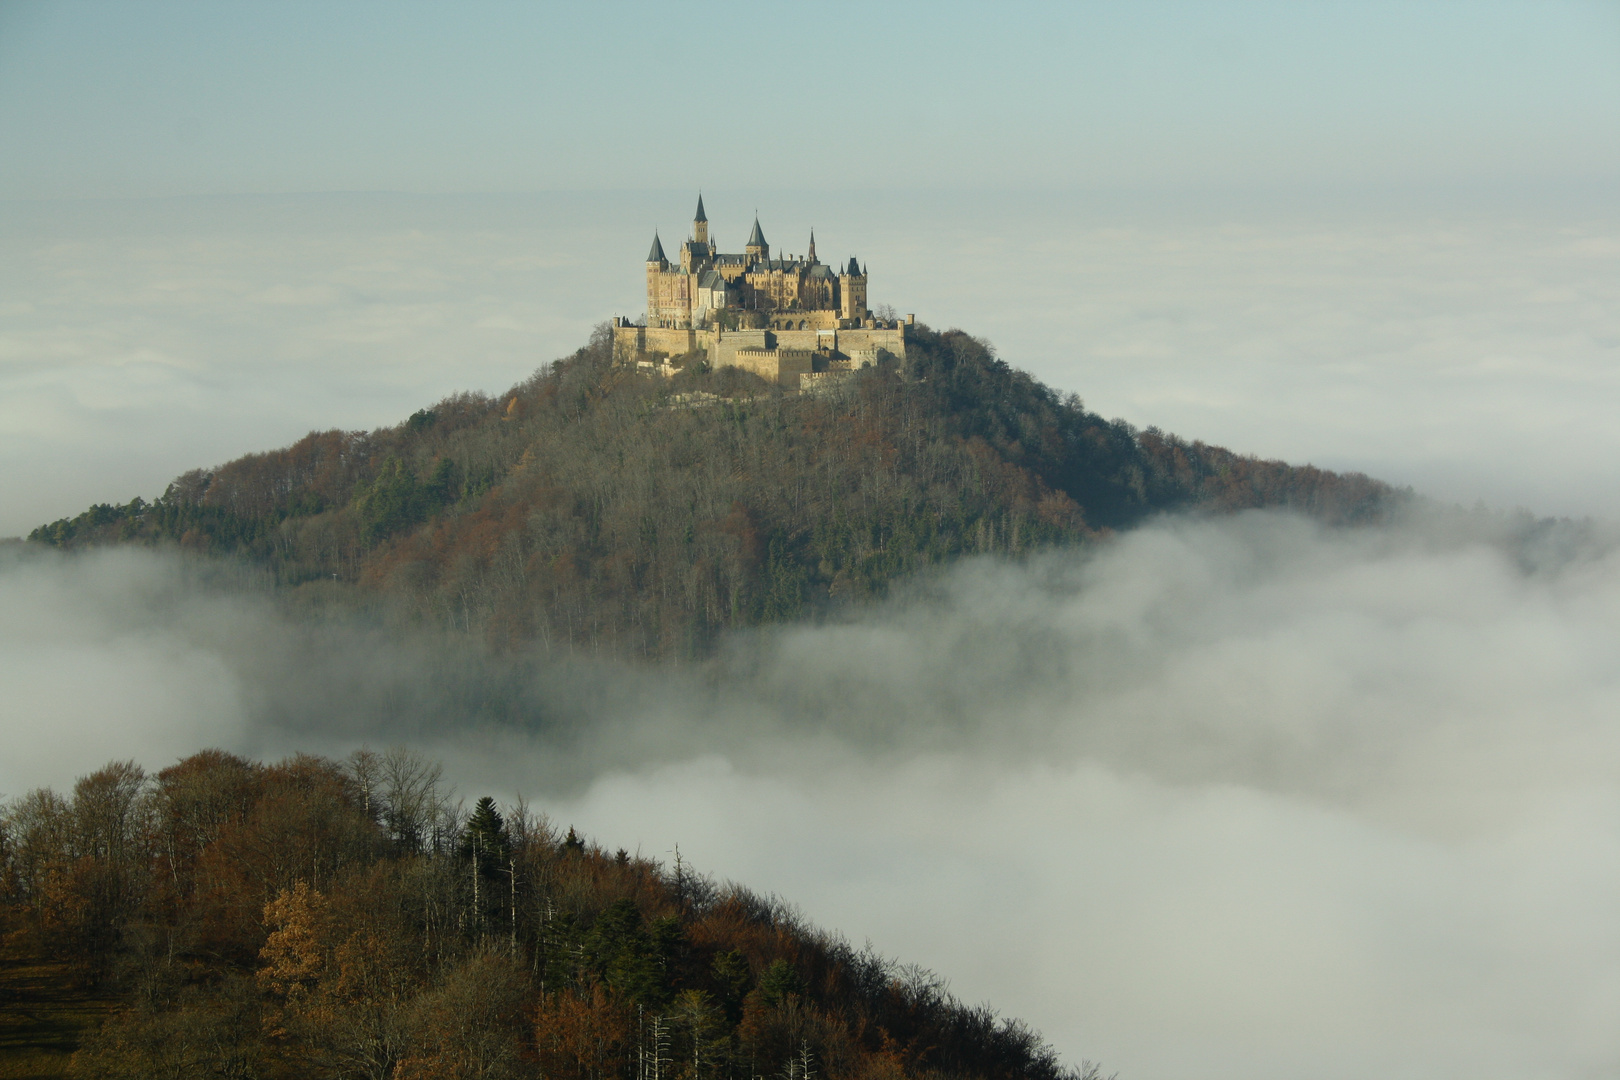 Mächtige Burg Hohenzollern erhebt sich erhaben aus dem Nebel